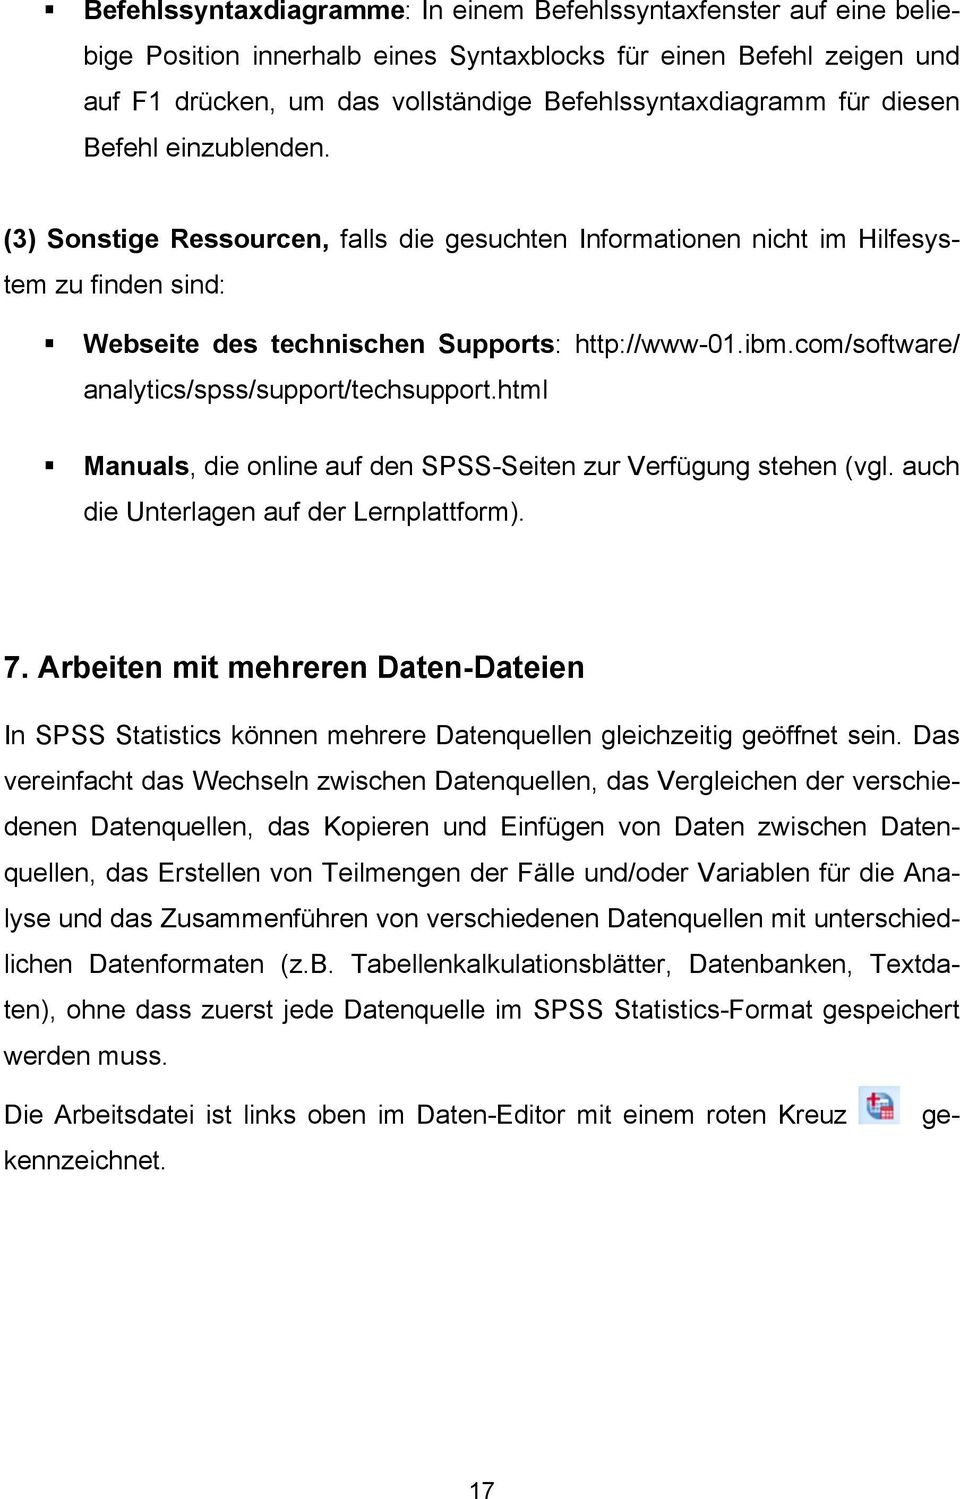 com/software/ analytics/spss/support/techsupport.html Manuals, die online auf den SPSS-Seiten zur Verfügung stehen (vgl. auch die Unterlagen auf der Lernplattform). 7.